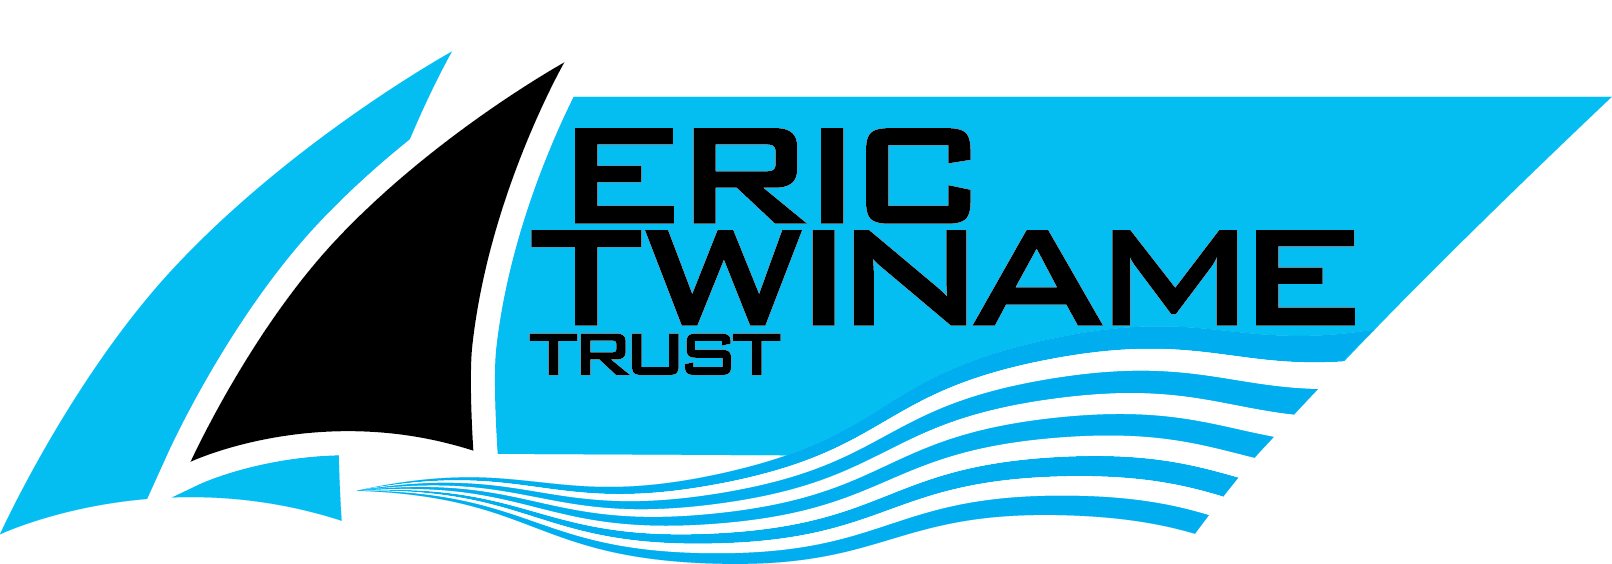 Eric Twiname Trust